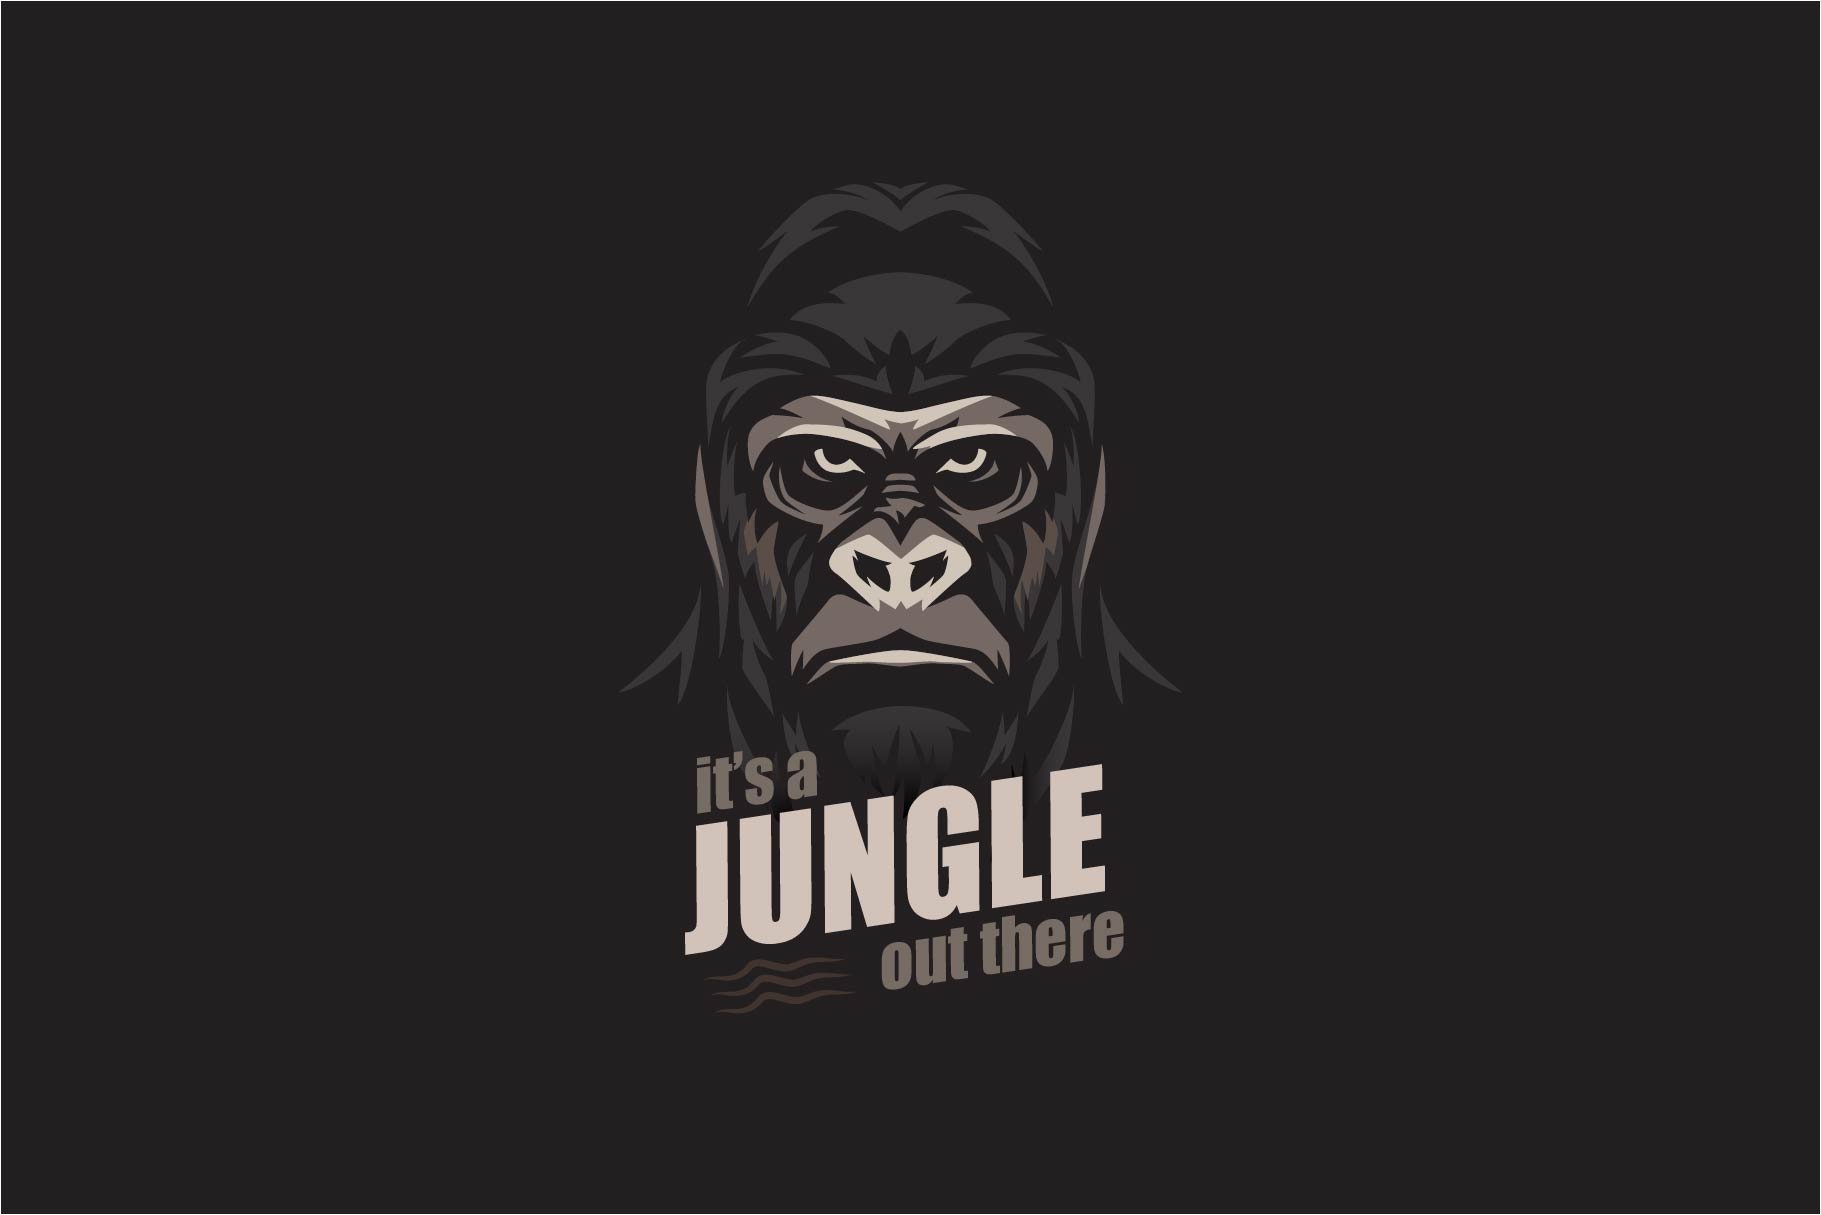 Gorilla Monkey Logo cover image.